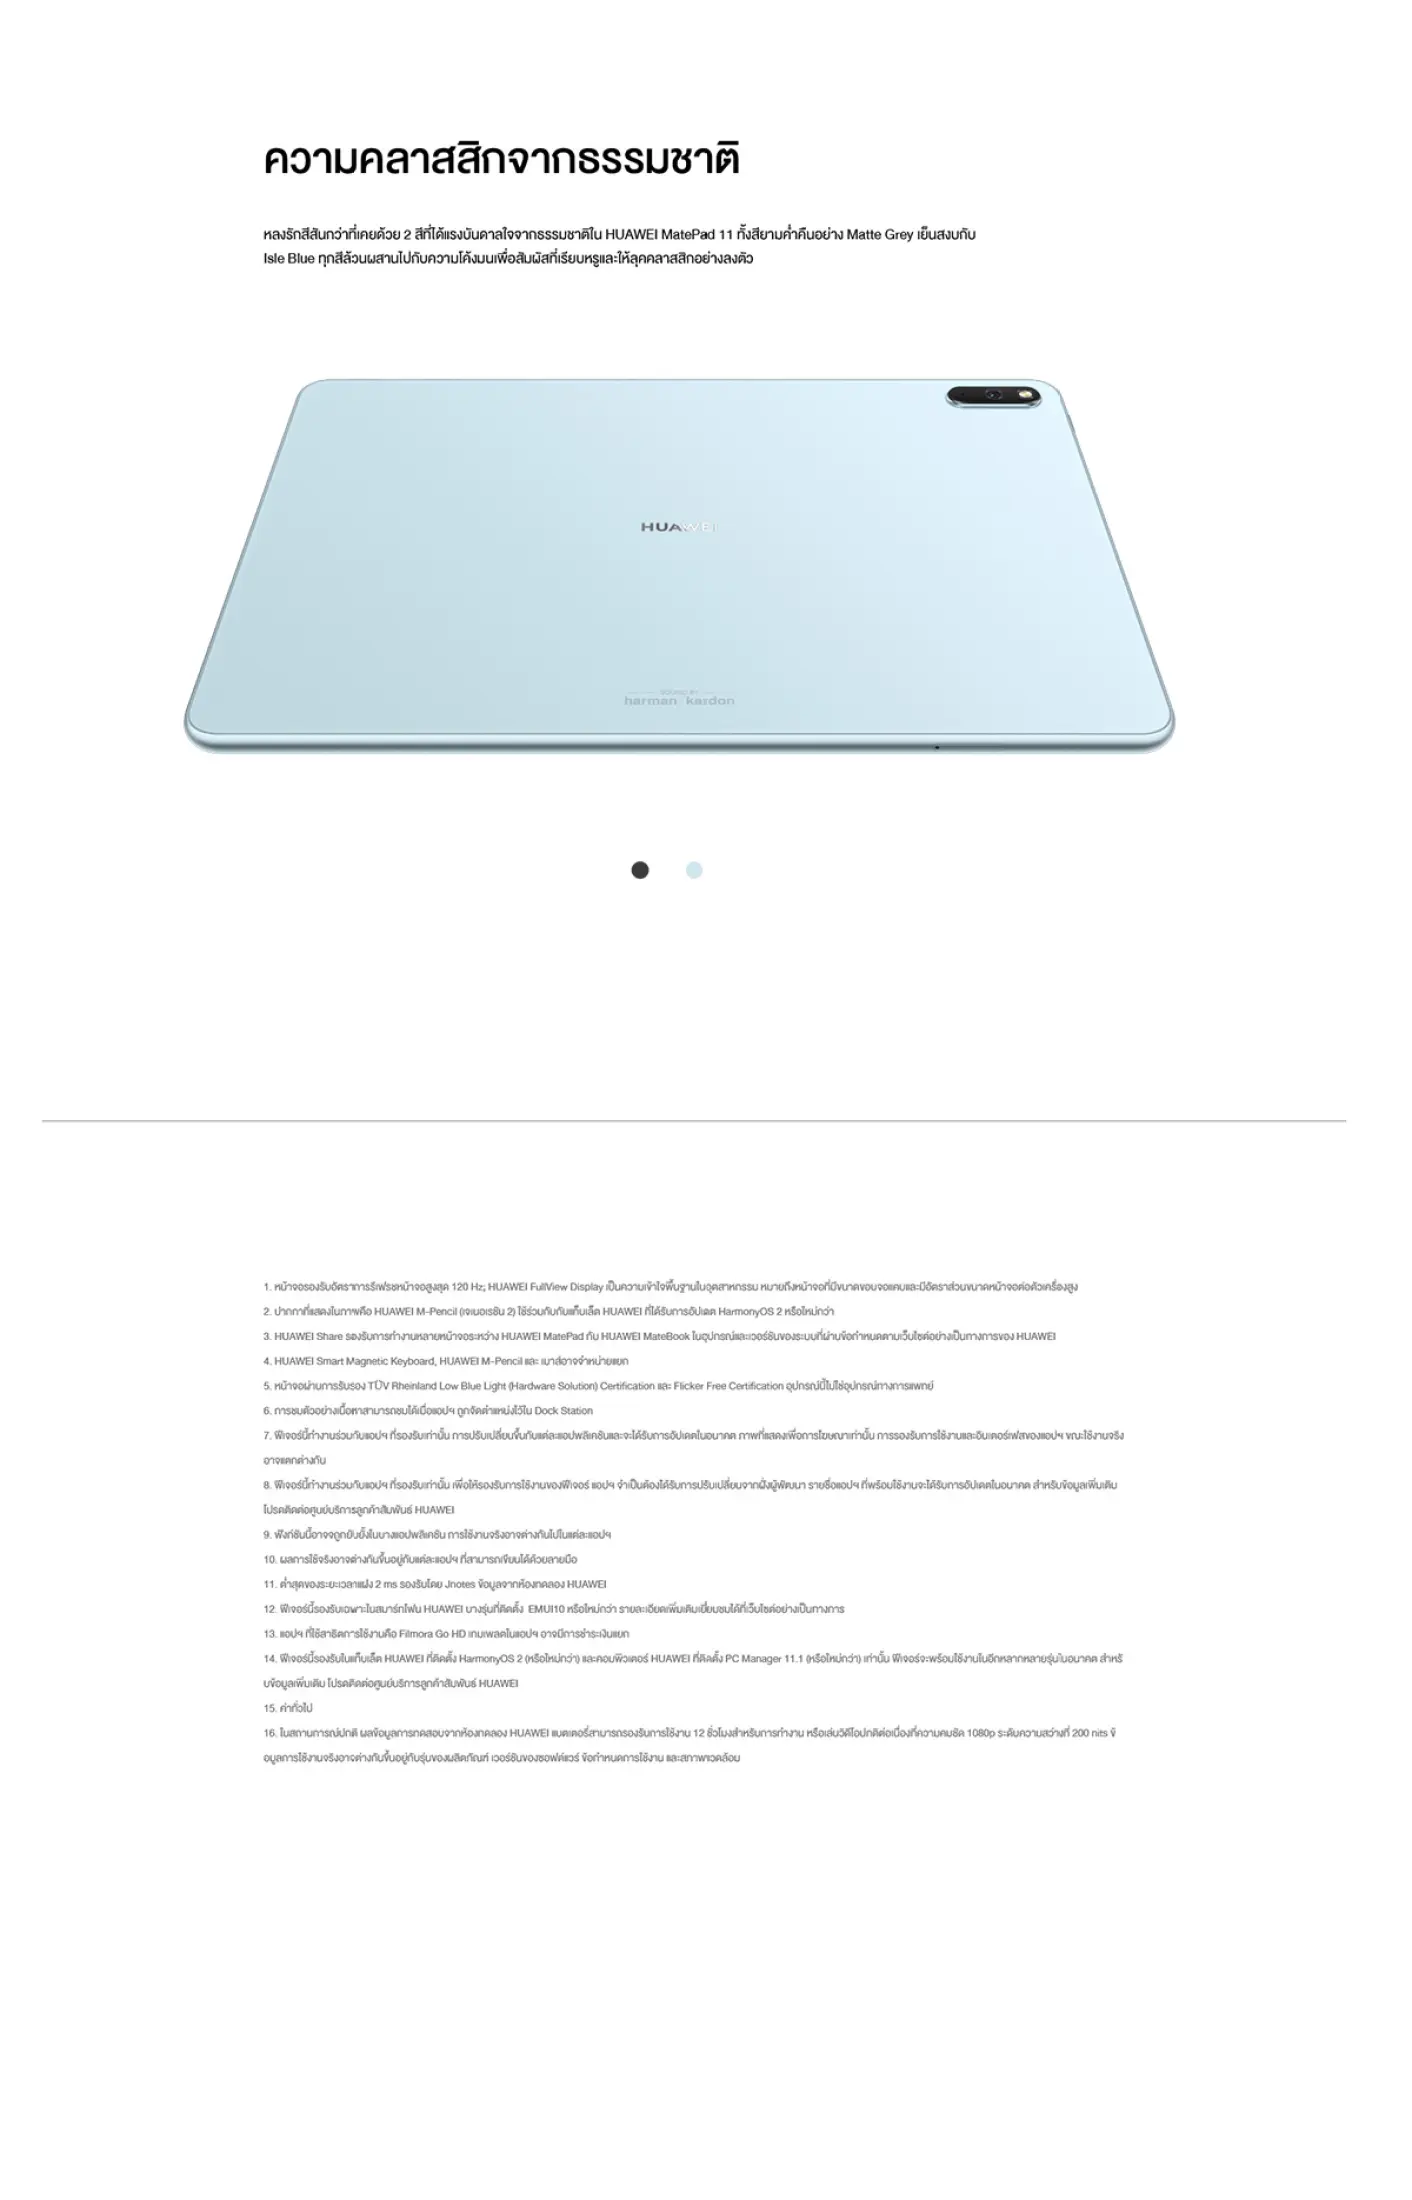 ภาพประกอบของ H MatePad 11 Wifi (ไม่รองรับซิมการ์ด) Ram6/128gb เครื่องศูนย์ไทย ราคาพิเศษ ประกันร้าน จอ LCD 120Hz, ลำโพง Harman Kardon 4 ตัว และชิป SD 865 ส่งฟรี!